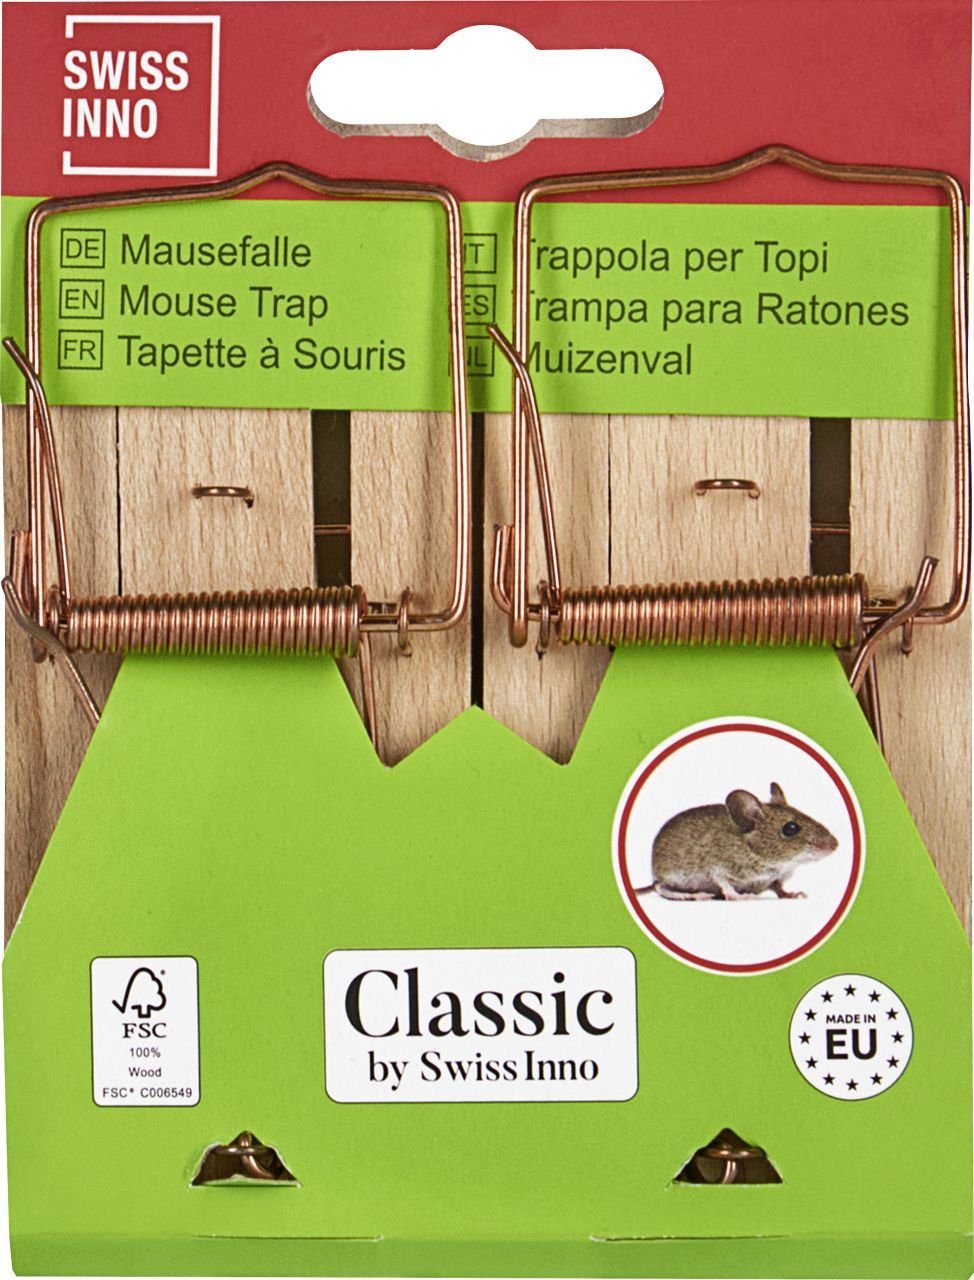 Swissinno Insektenvernichtungsmittel Swissinno Classic Holz-Mausefalle FSC zertifiziert